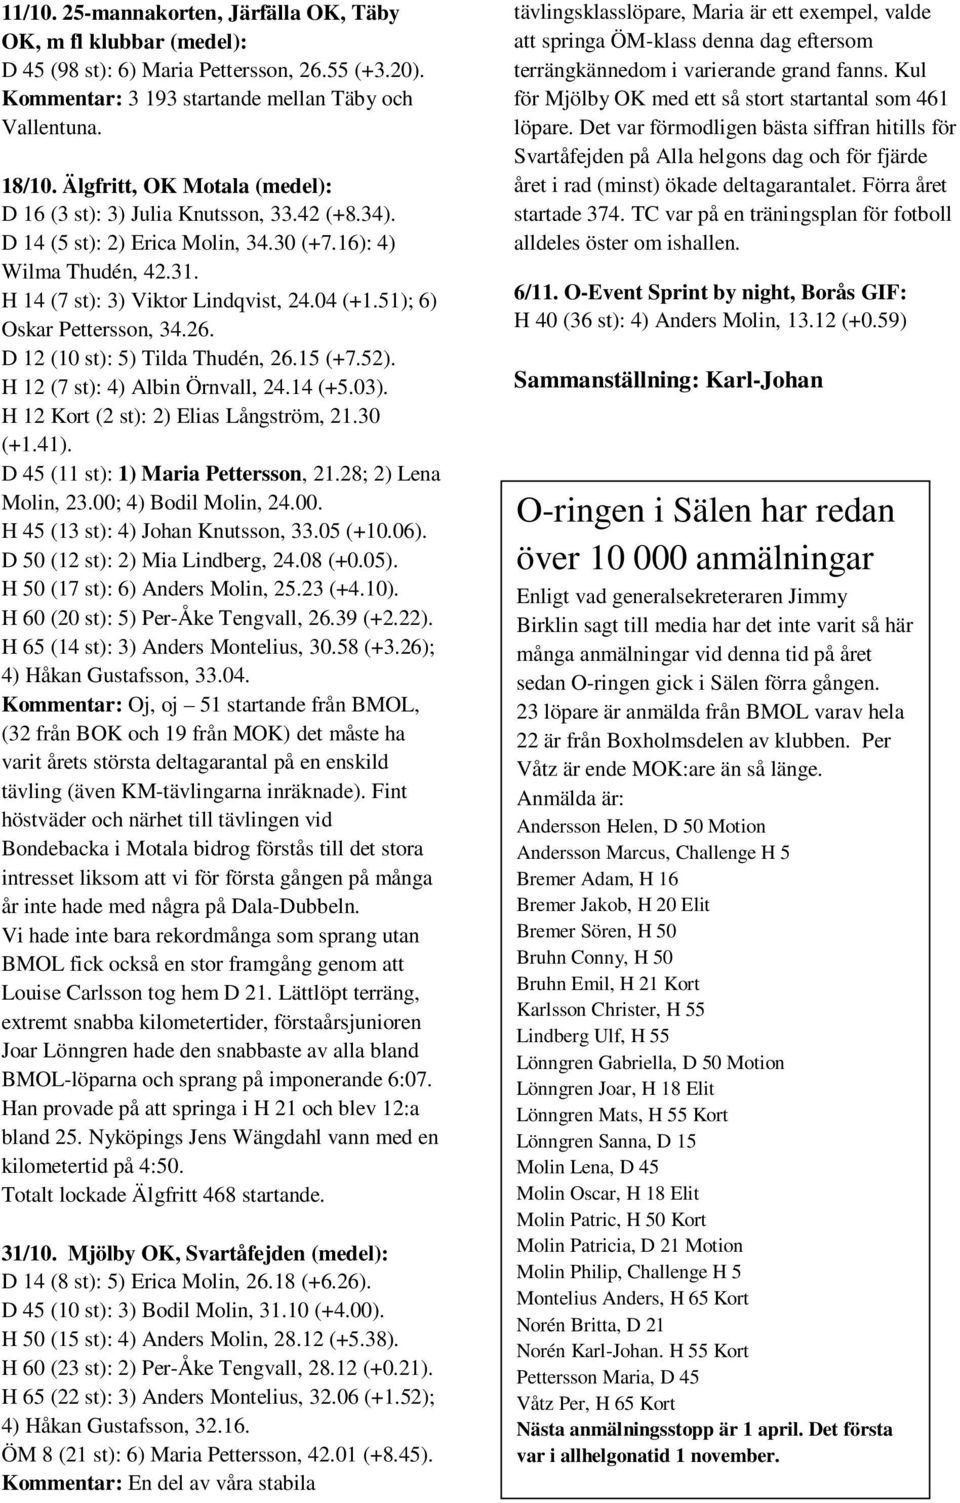 51); 6) Oskar Pettersson, 34.26. D 12 (10 st): 5) Tilda Thudén, 26.15 (+7.52). H 12 (7 st): 4) Albin Örnvall, 24.14 (+5.03). H 12 Kort (2 st): 2) Elias Långström, 21.30 (+1.41).